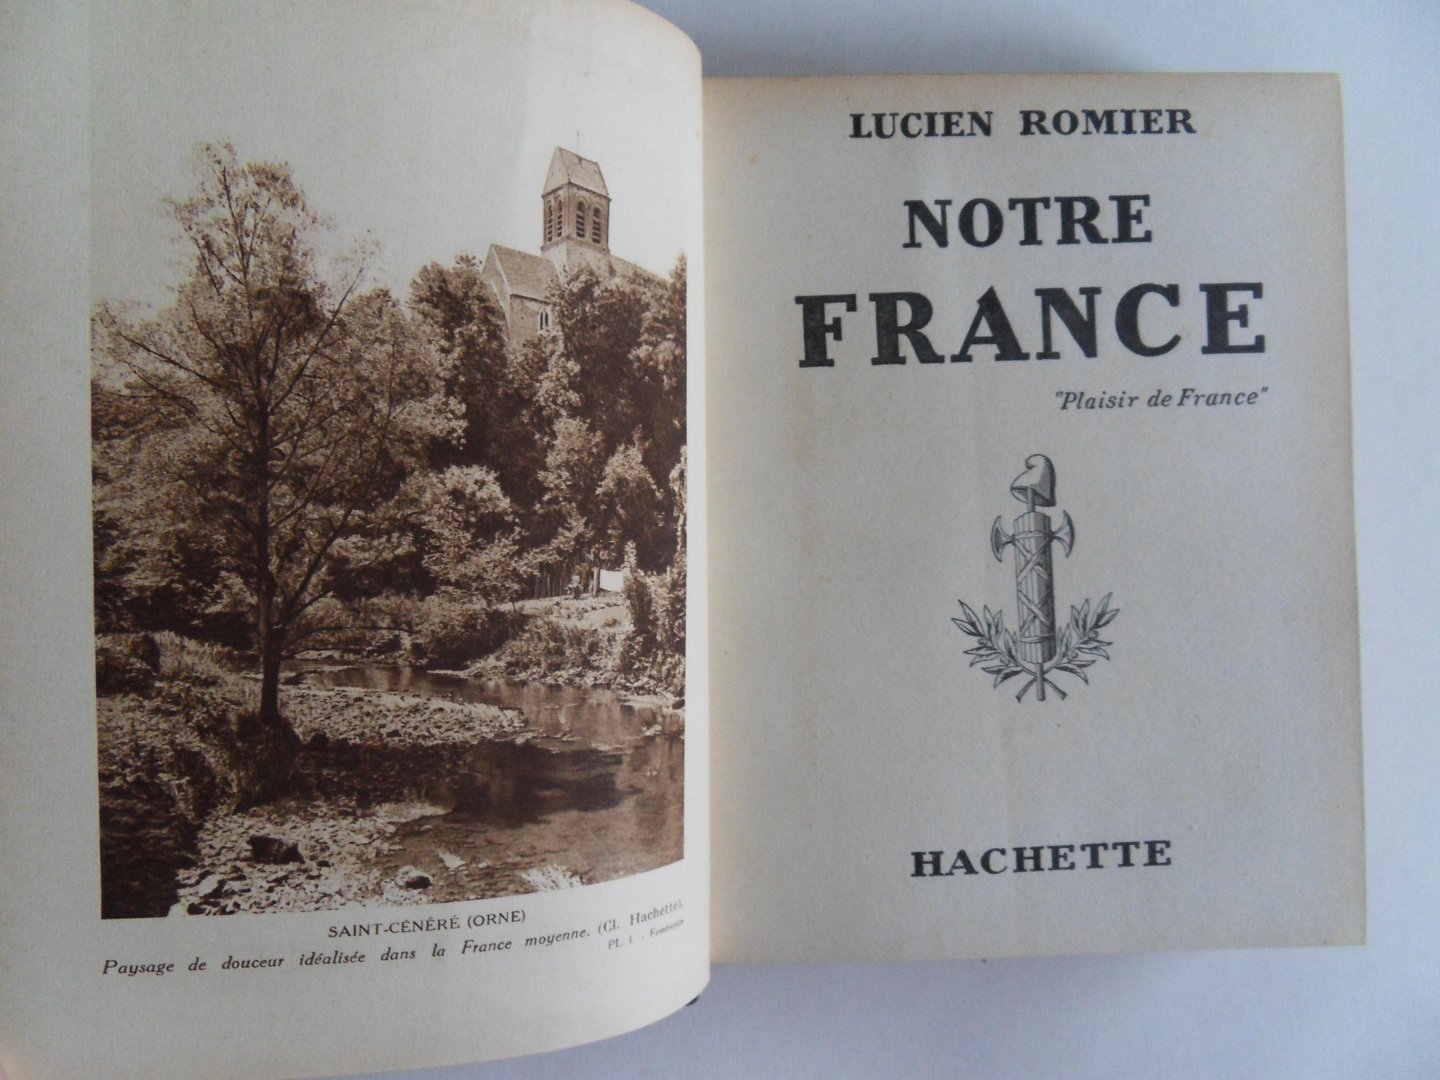 Romier, Lucien. - Notre France. - "Plaisir de France".